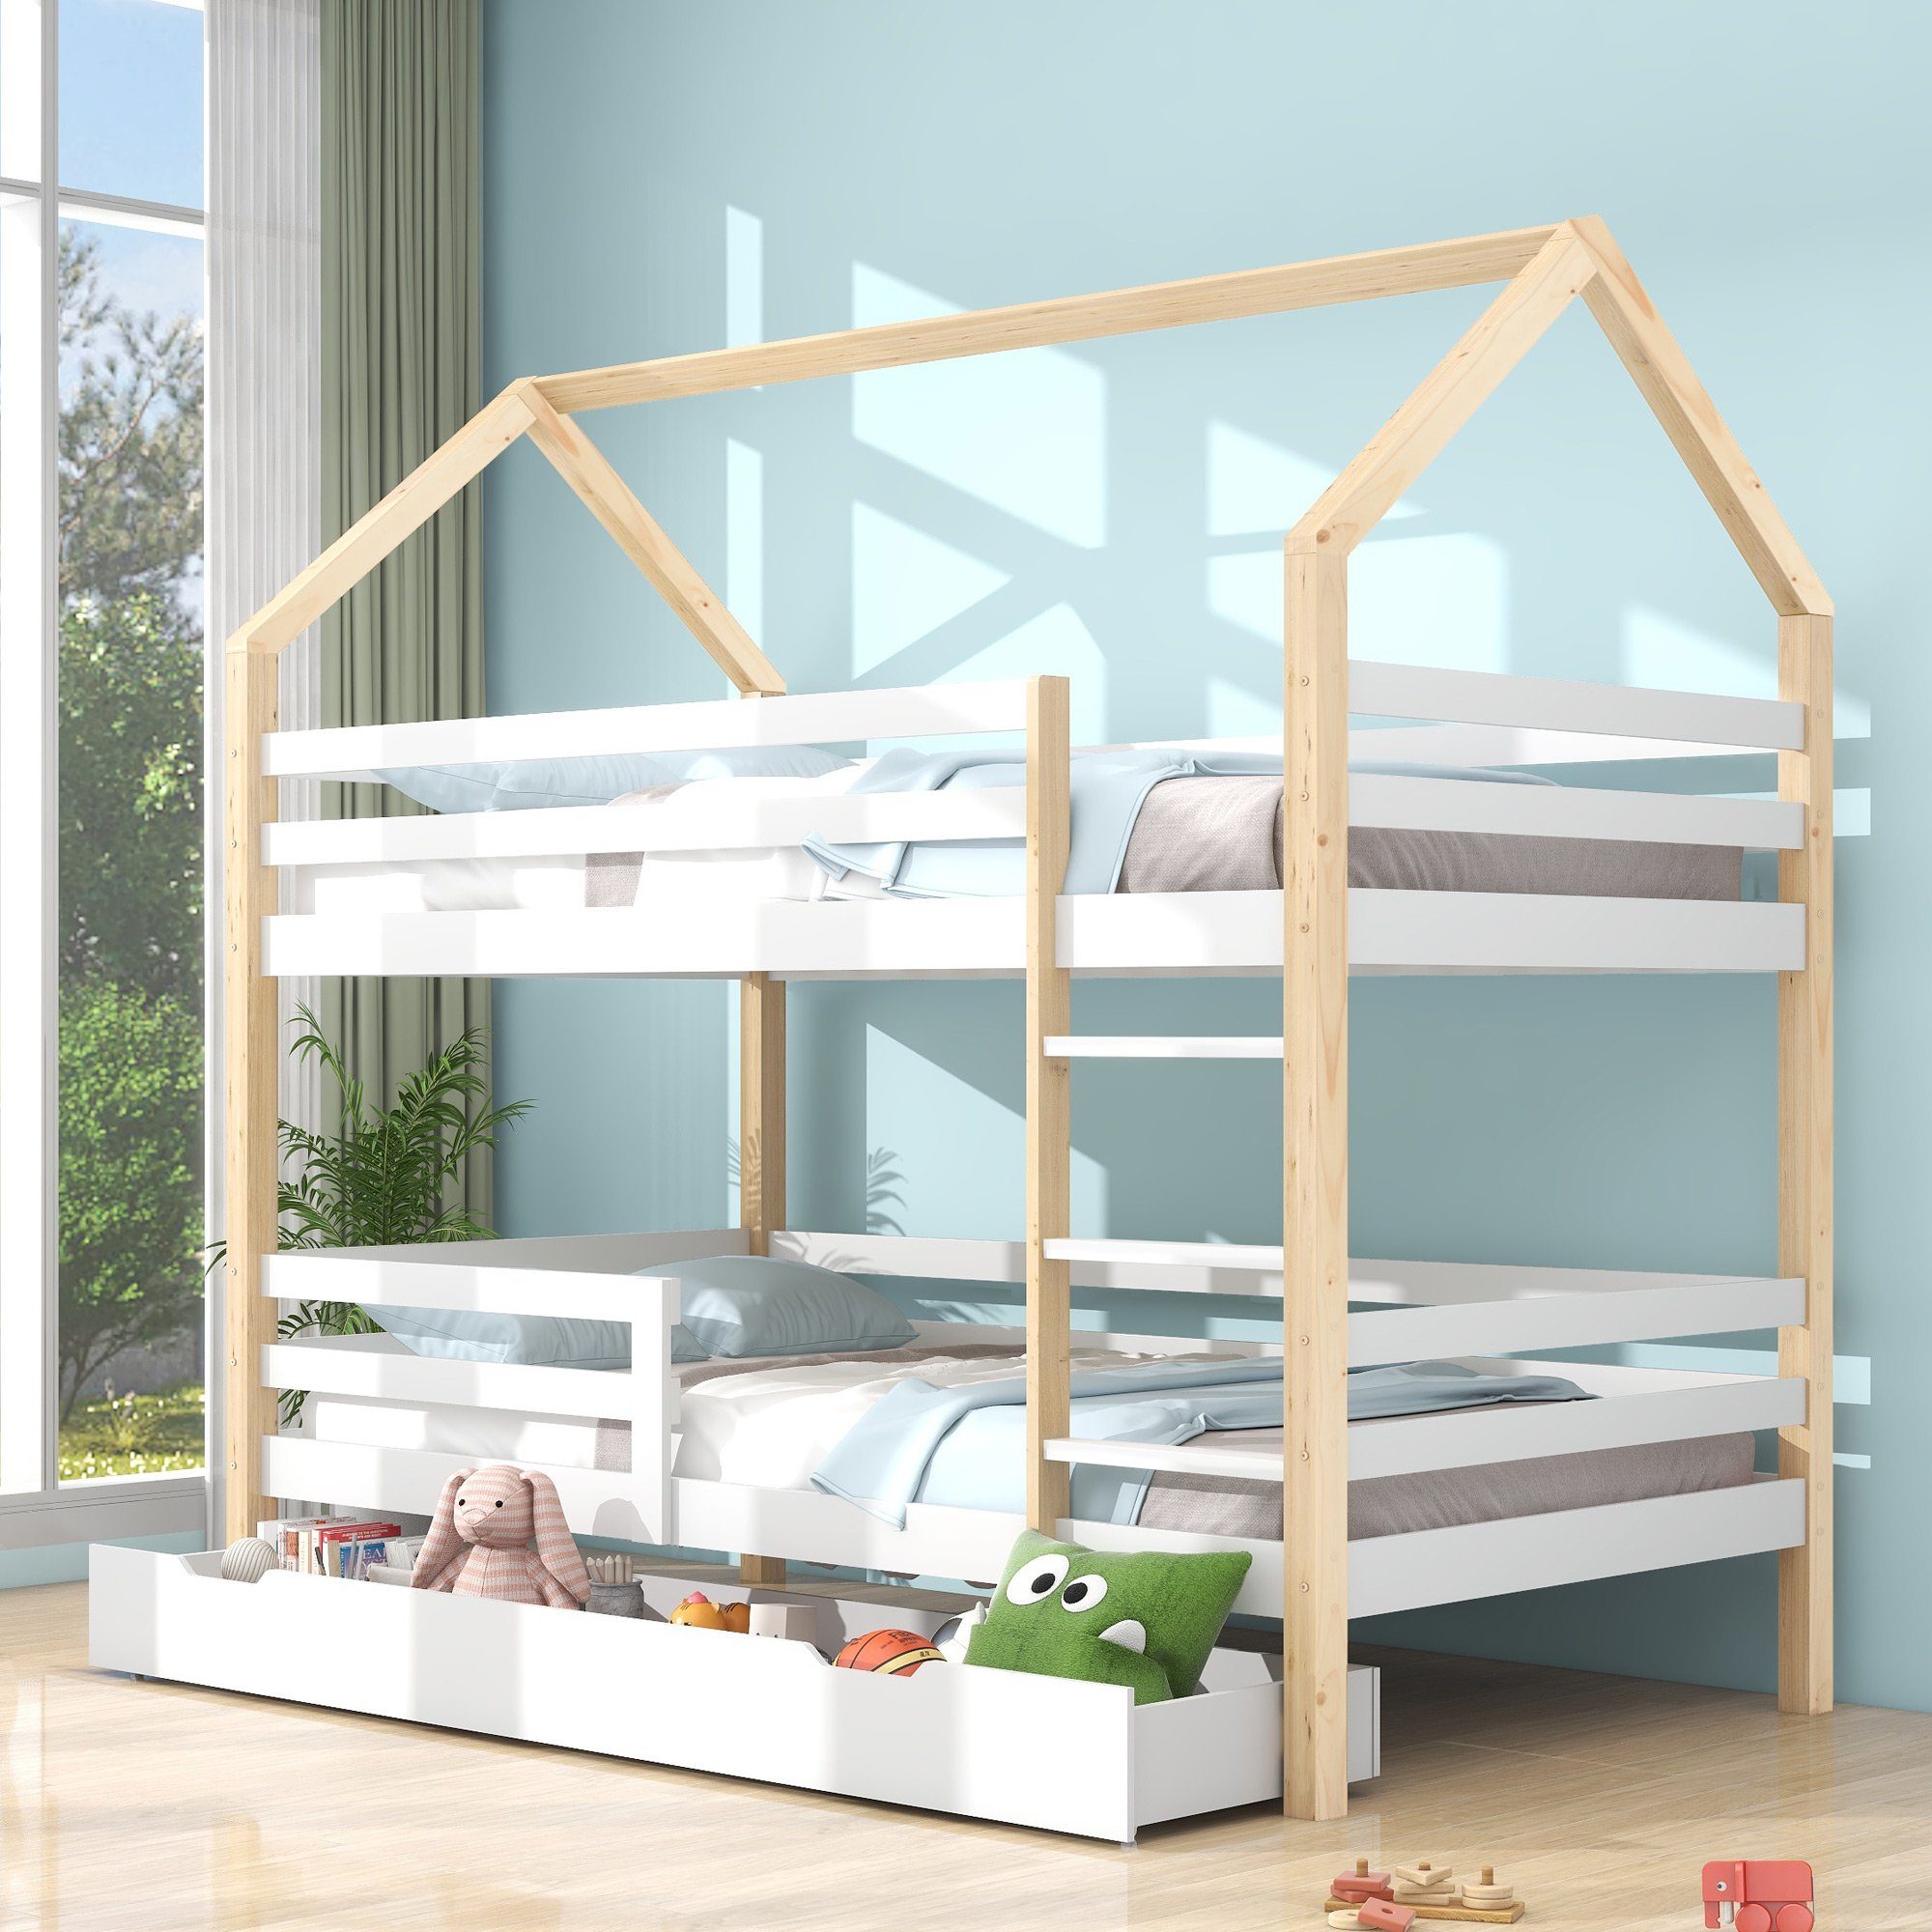 SOFTWEARY Etagenbett mit 2 Schlafgelegenheiten, Rollrost und Leiter (90x200 cm), Hausbett inkl. Rausfallschutz, Kinderbett, Kiefer